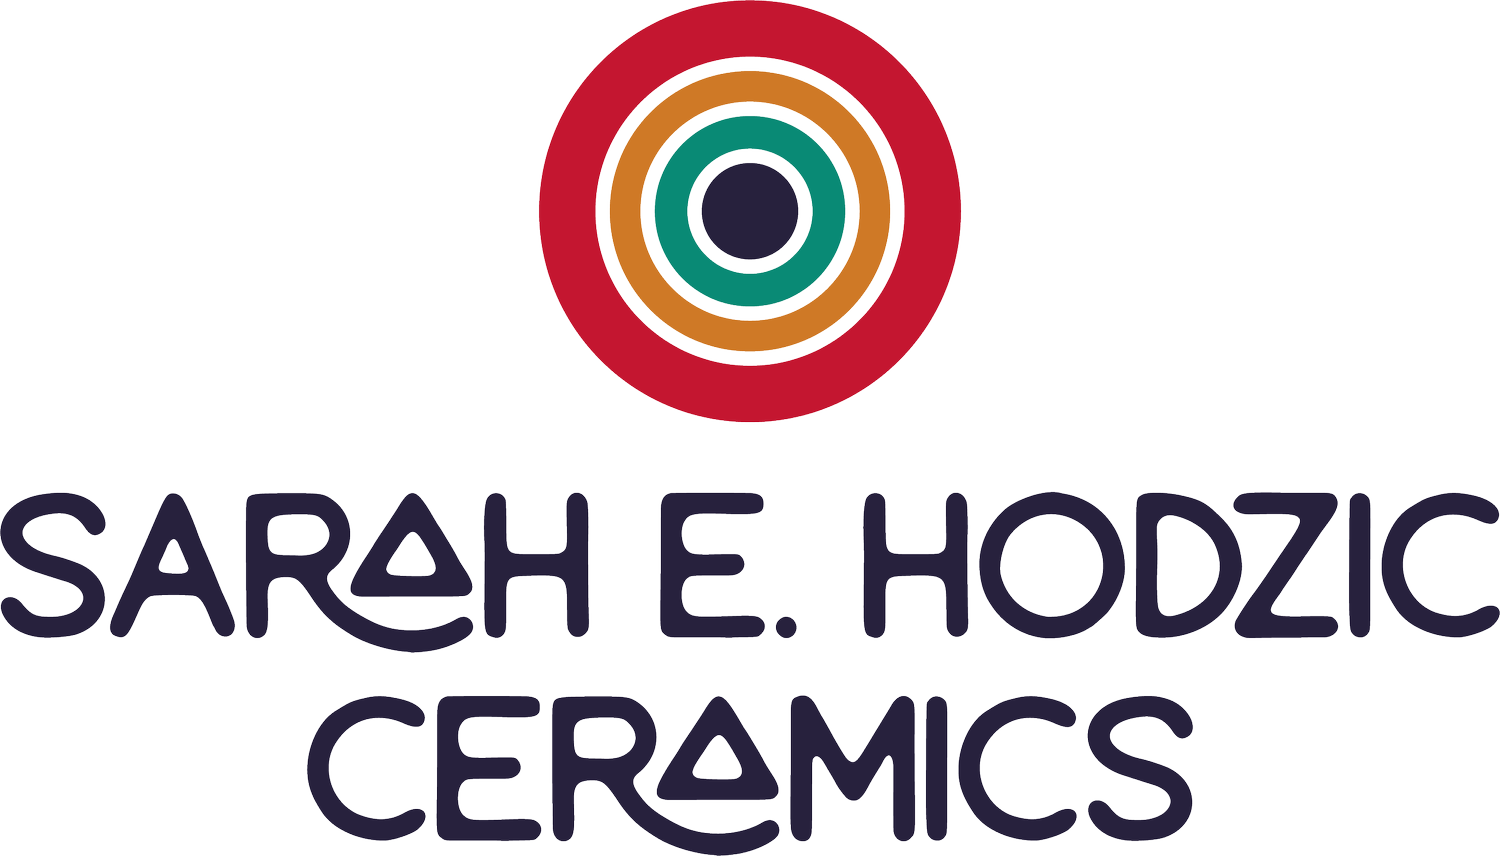 Sarah E. Hodzic Ceramics